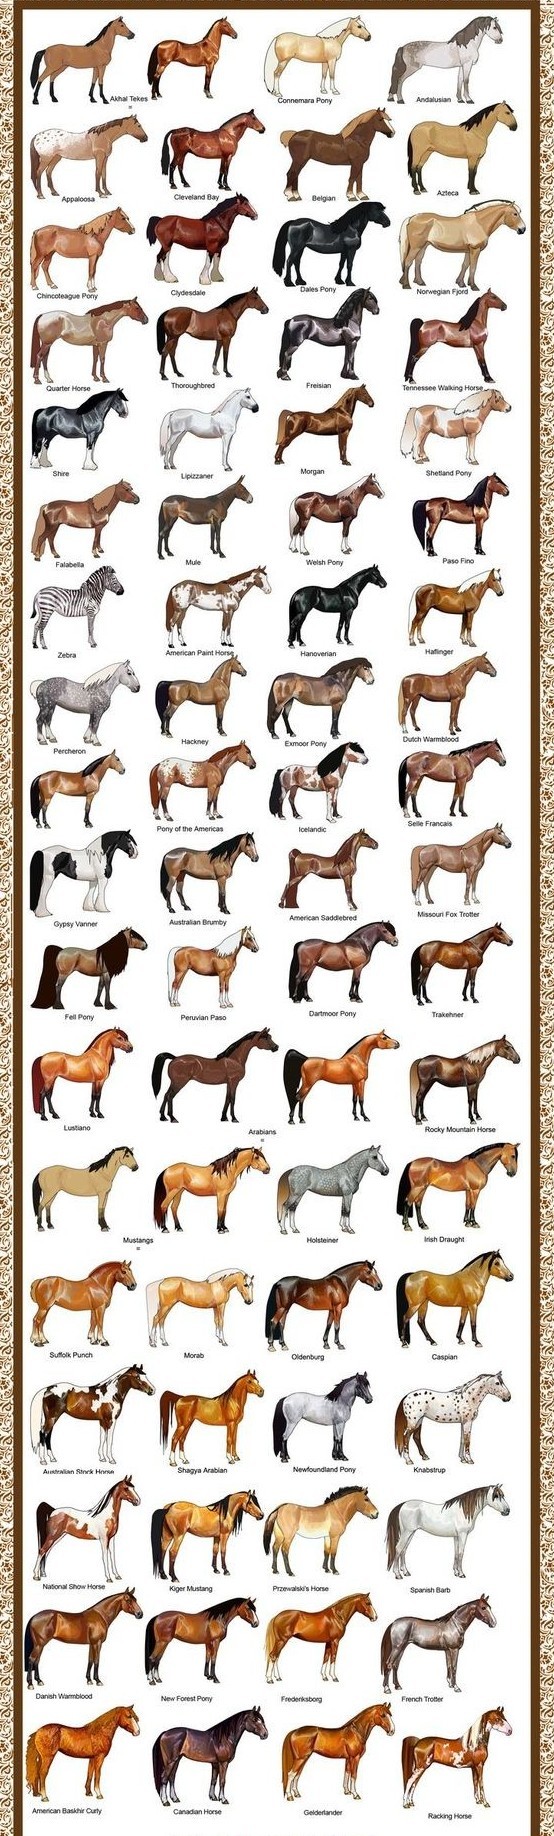 В мире существует около 300 пород лошадей